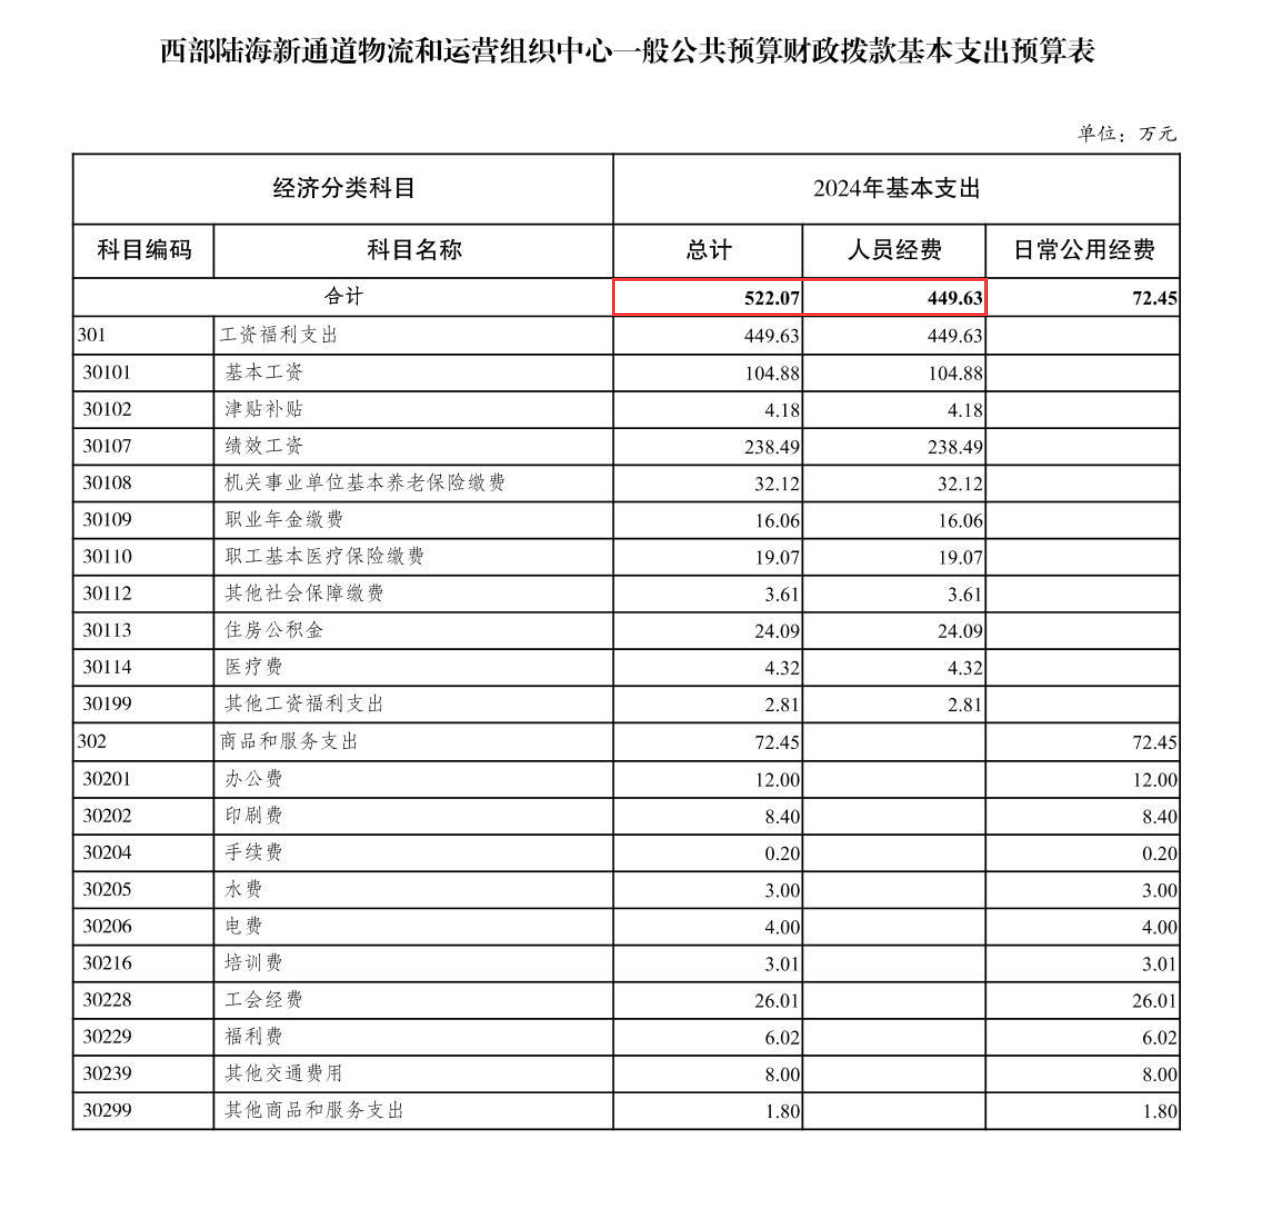 《西部陆海新通道物流和运营组织中心2024年单位预算情况说明》基本支出预算表。截图来源：重庆市政府口岸物流办